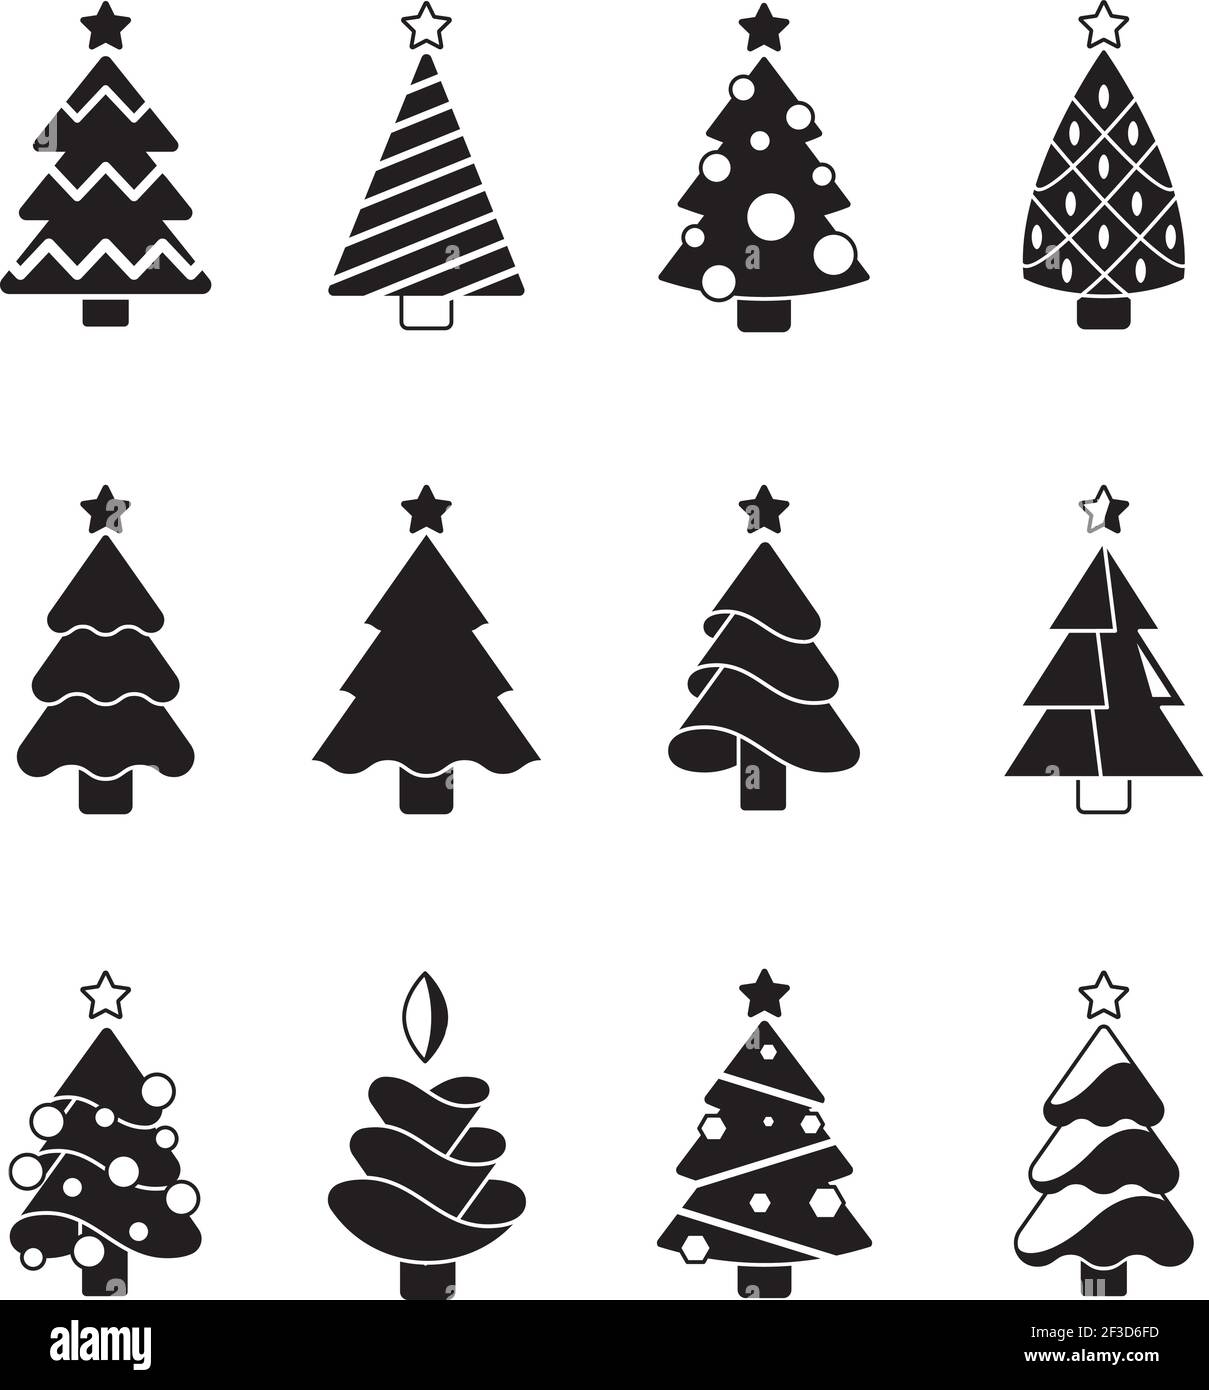 Weihnachtsbaum-Ikone. Natur Feier Symbole Bäume mit Geschenken und Spielzeug stilisierte Silhouetten Vektor-Set dekoriert Stock Vektor